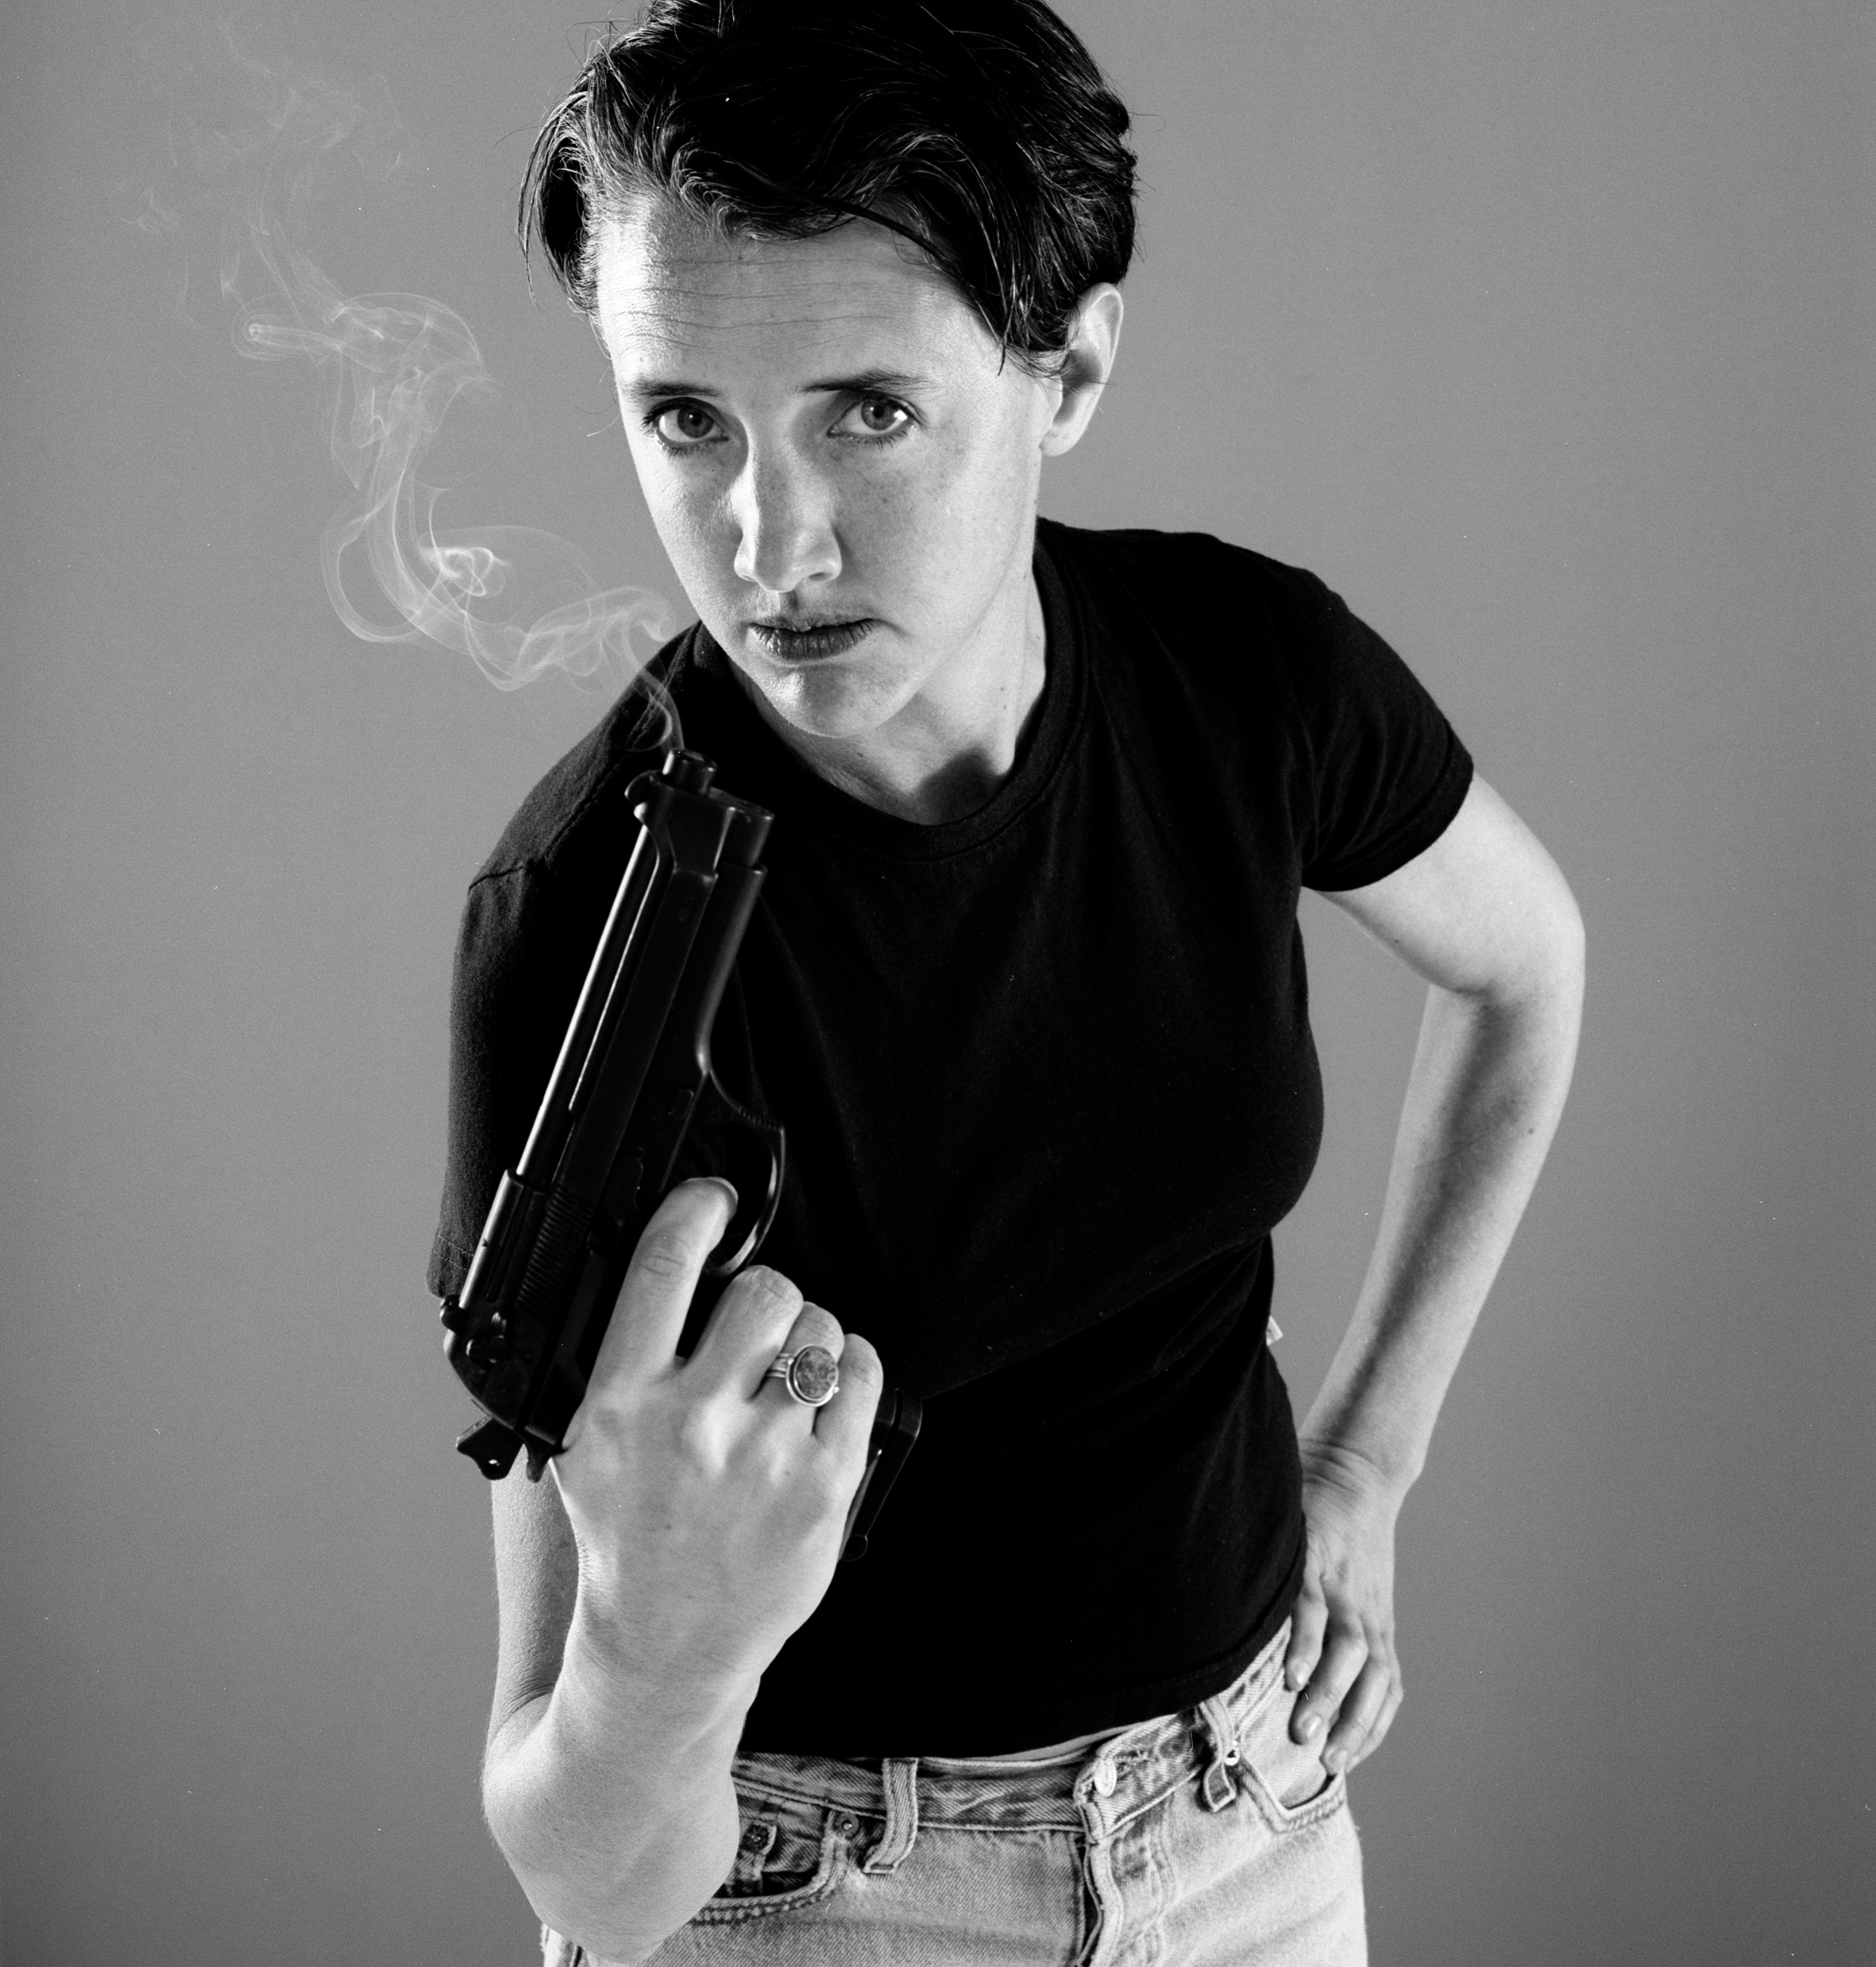 Woman holds smoking gun